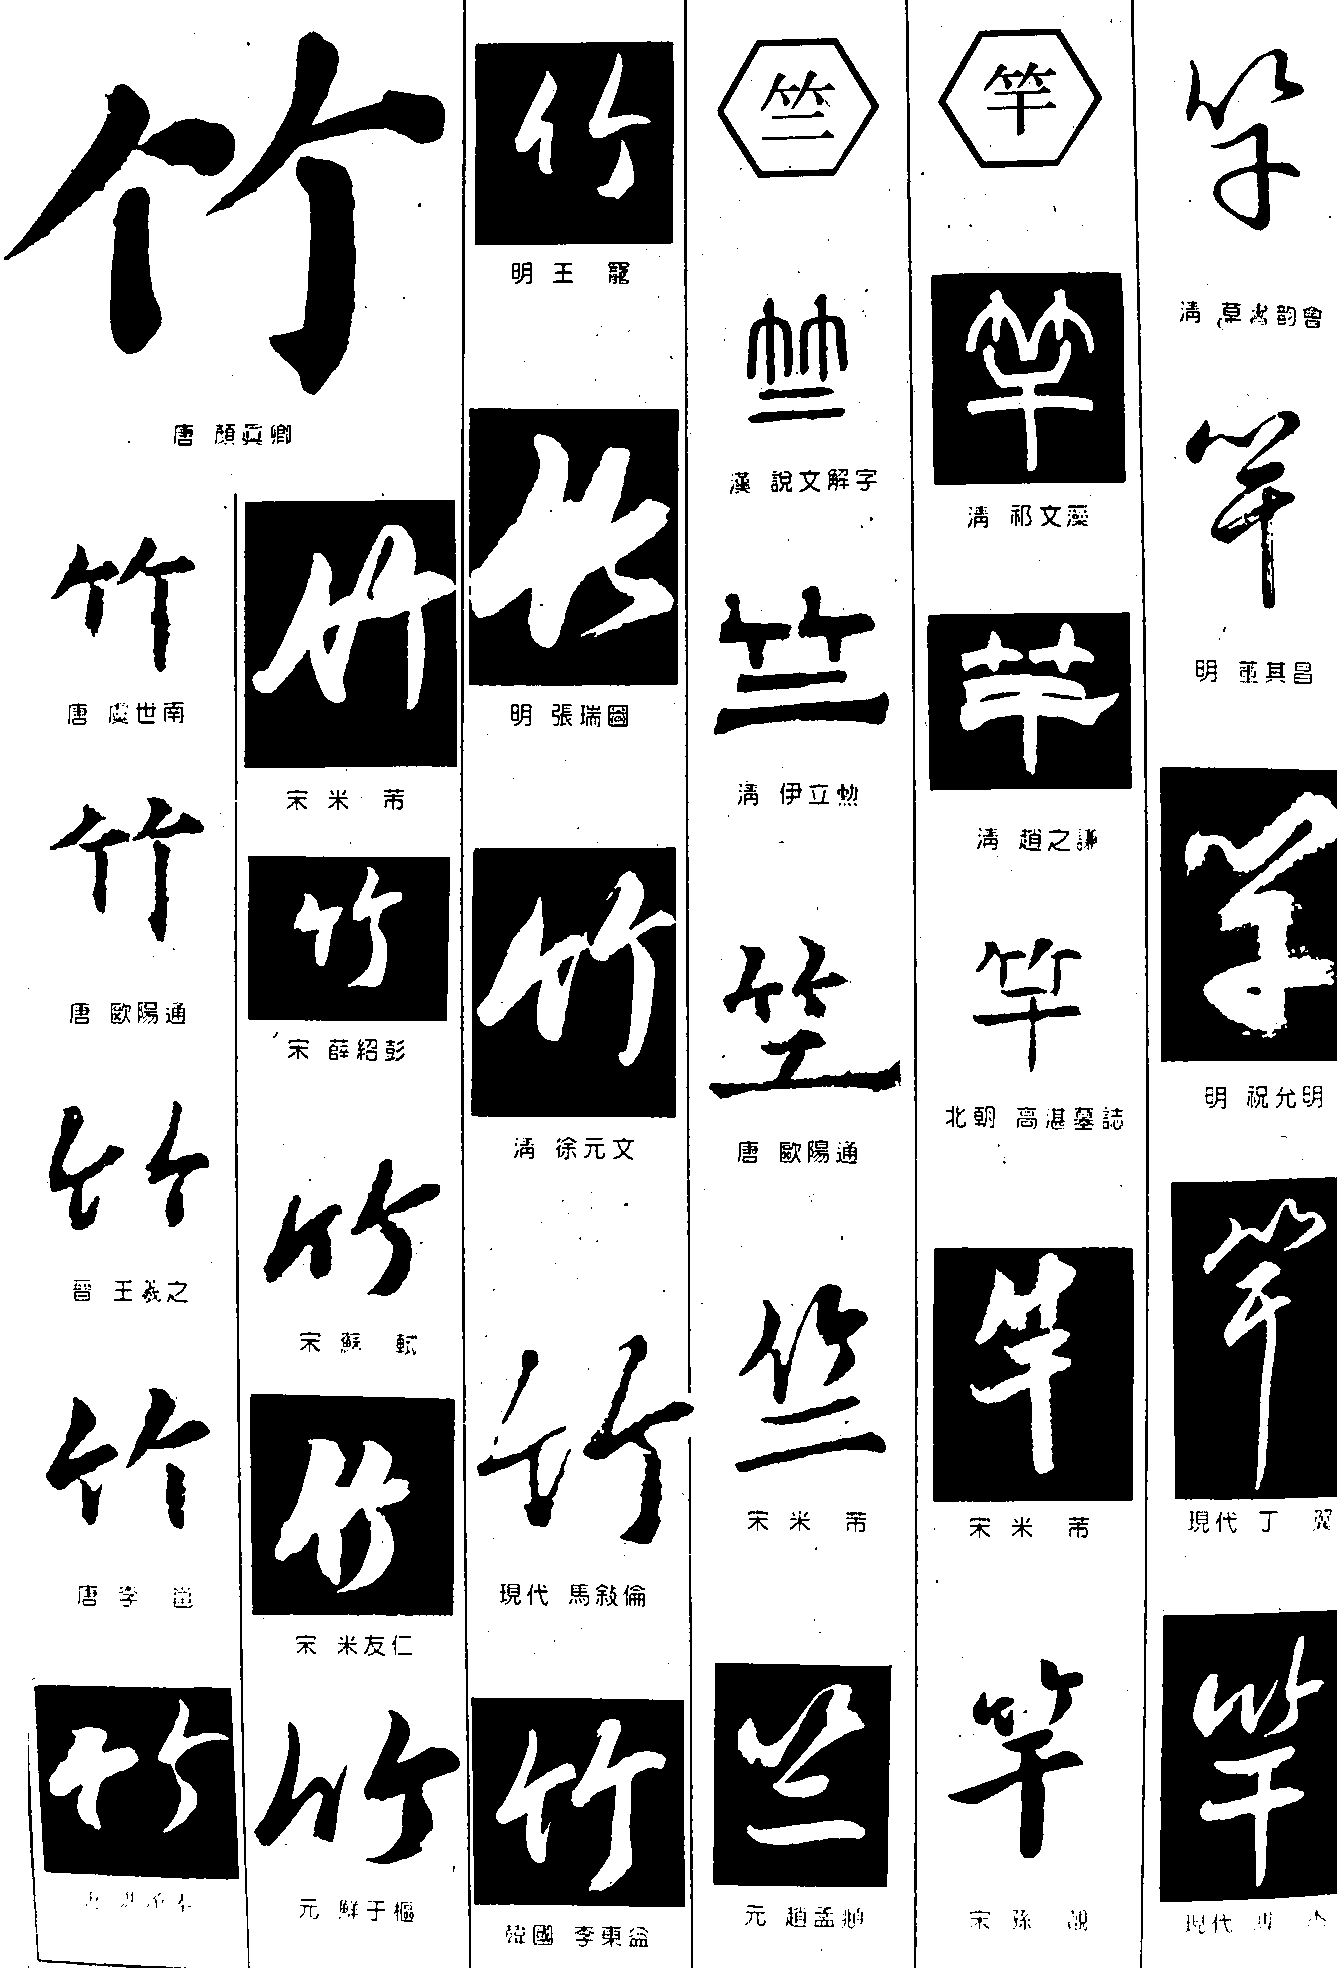 竹竺竿 艺术字 毛笔字 书法字 繁体 标志设计